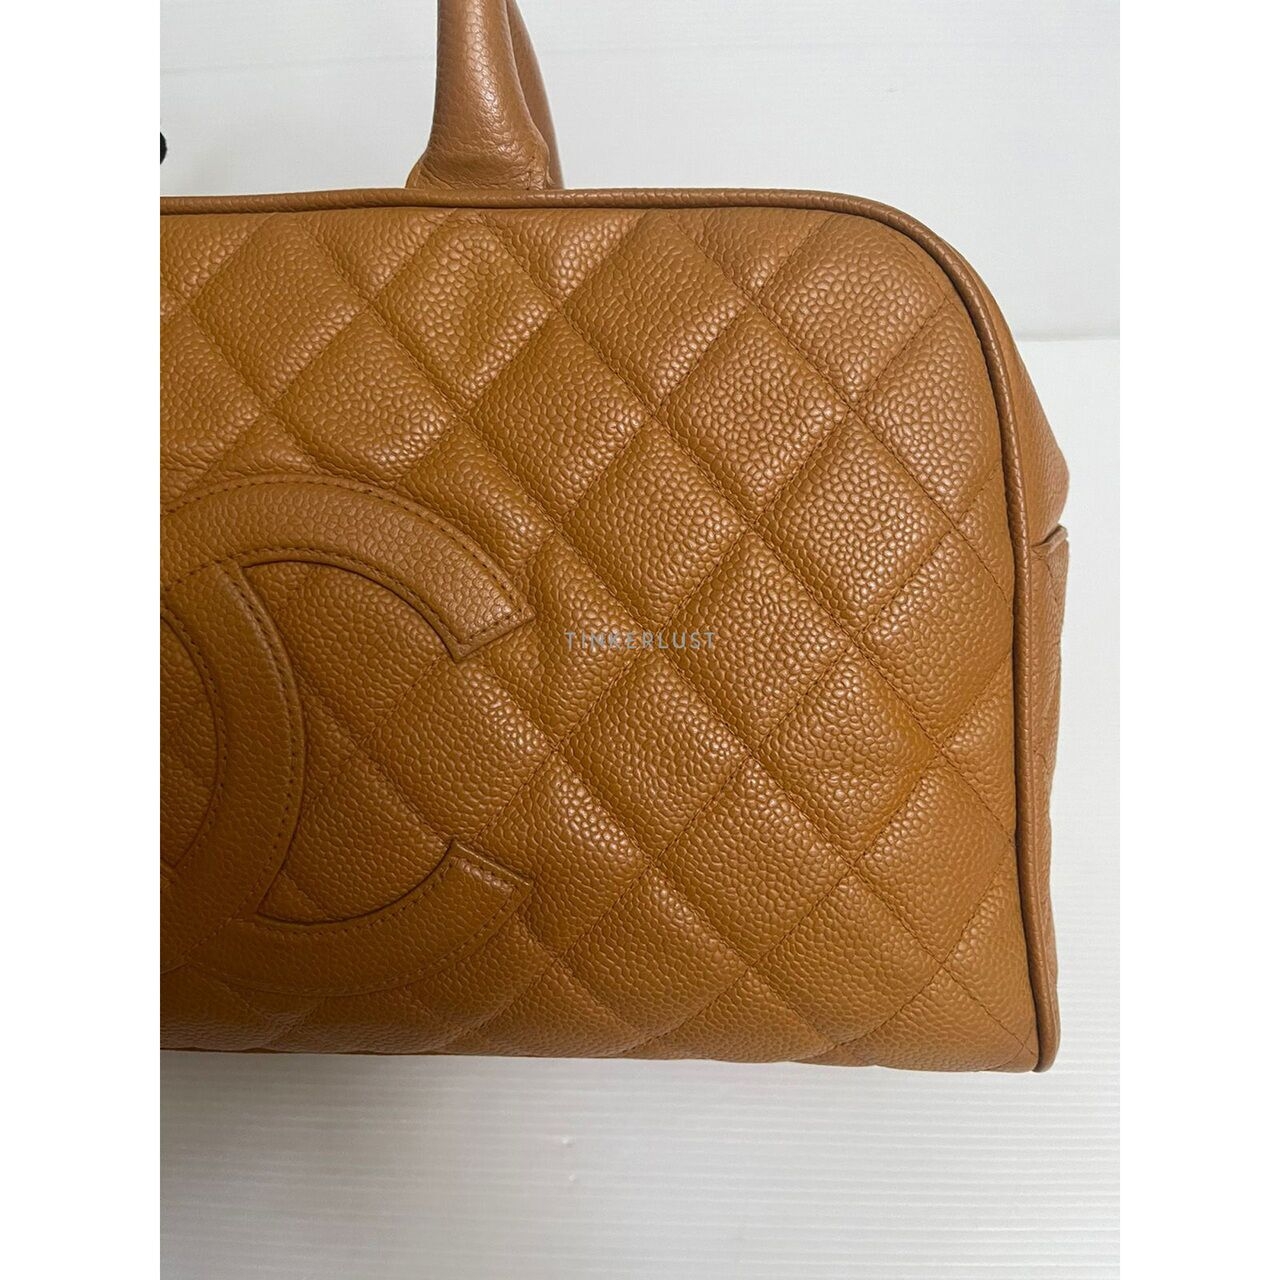 Chanel Bowling Caramel Caviar GHW #8 Handbag